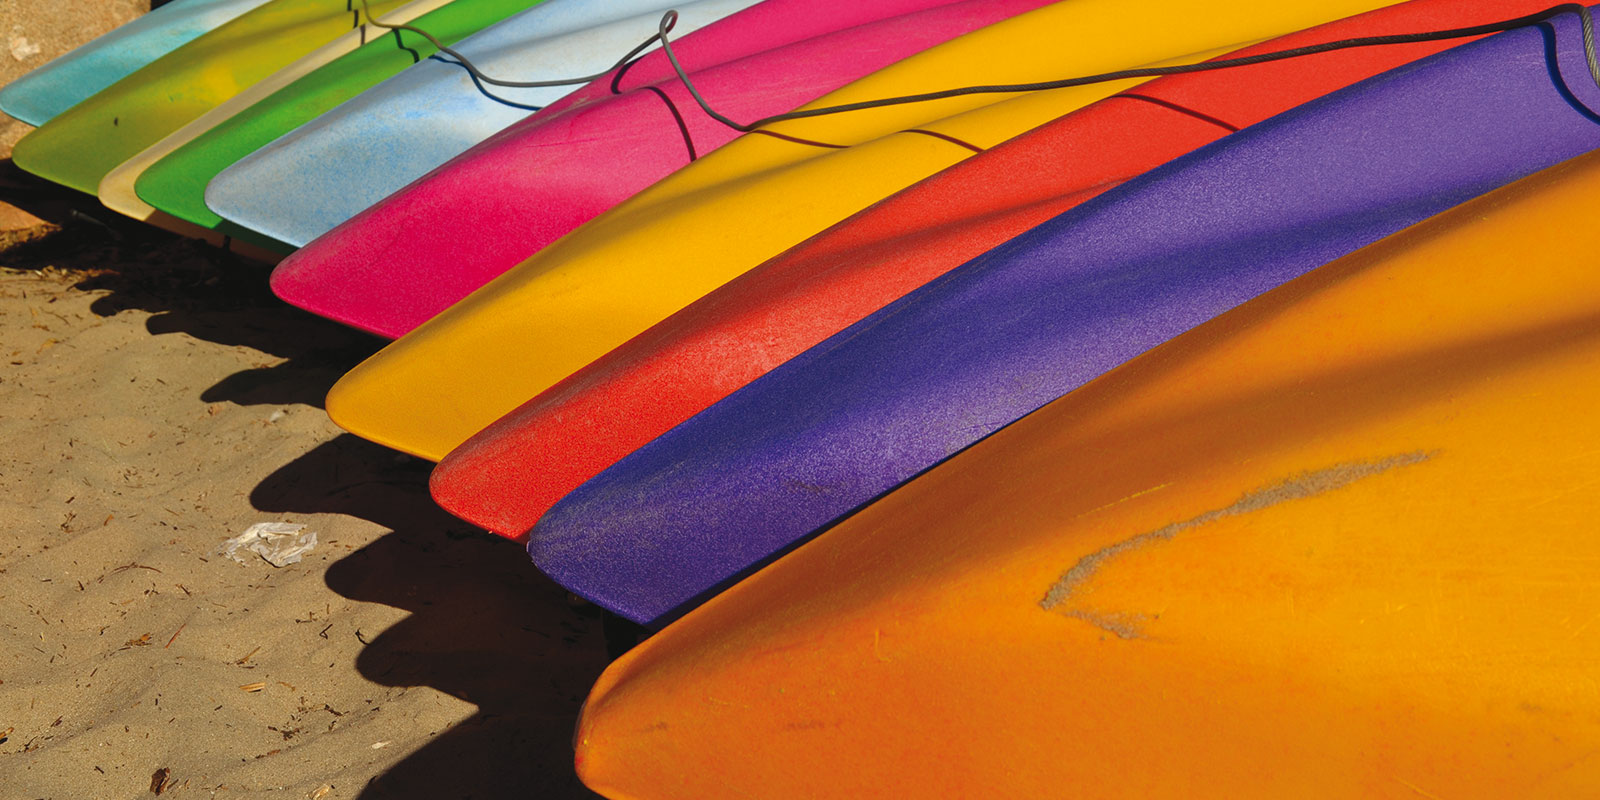 'Kayaks' (Kalbarri, WA) by Chris Fithall